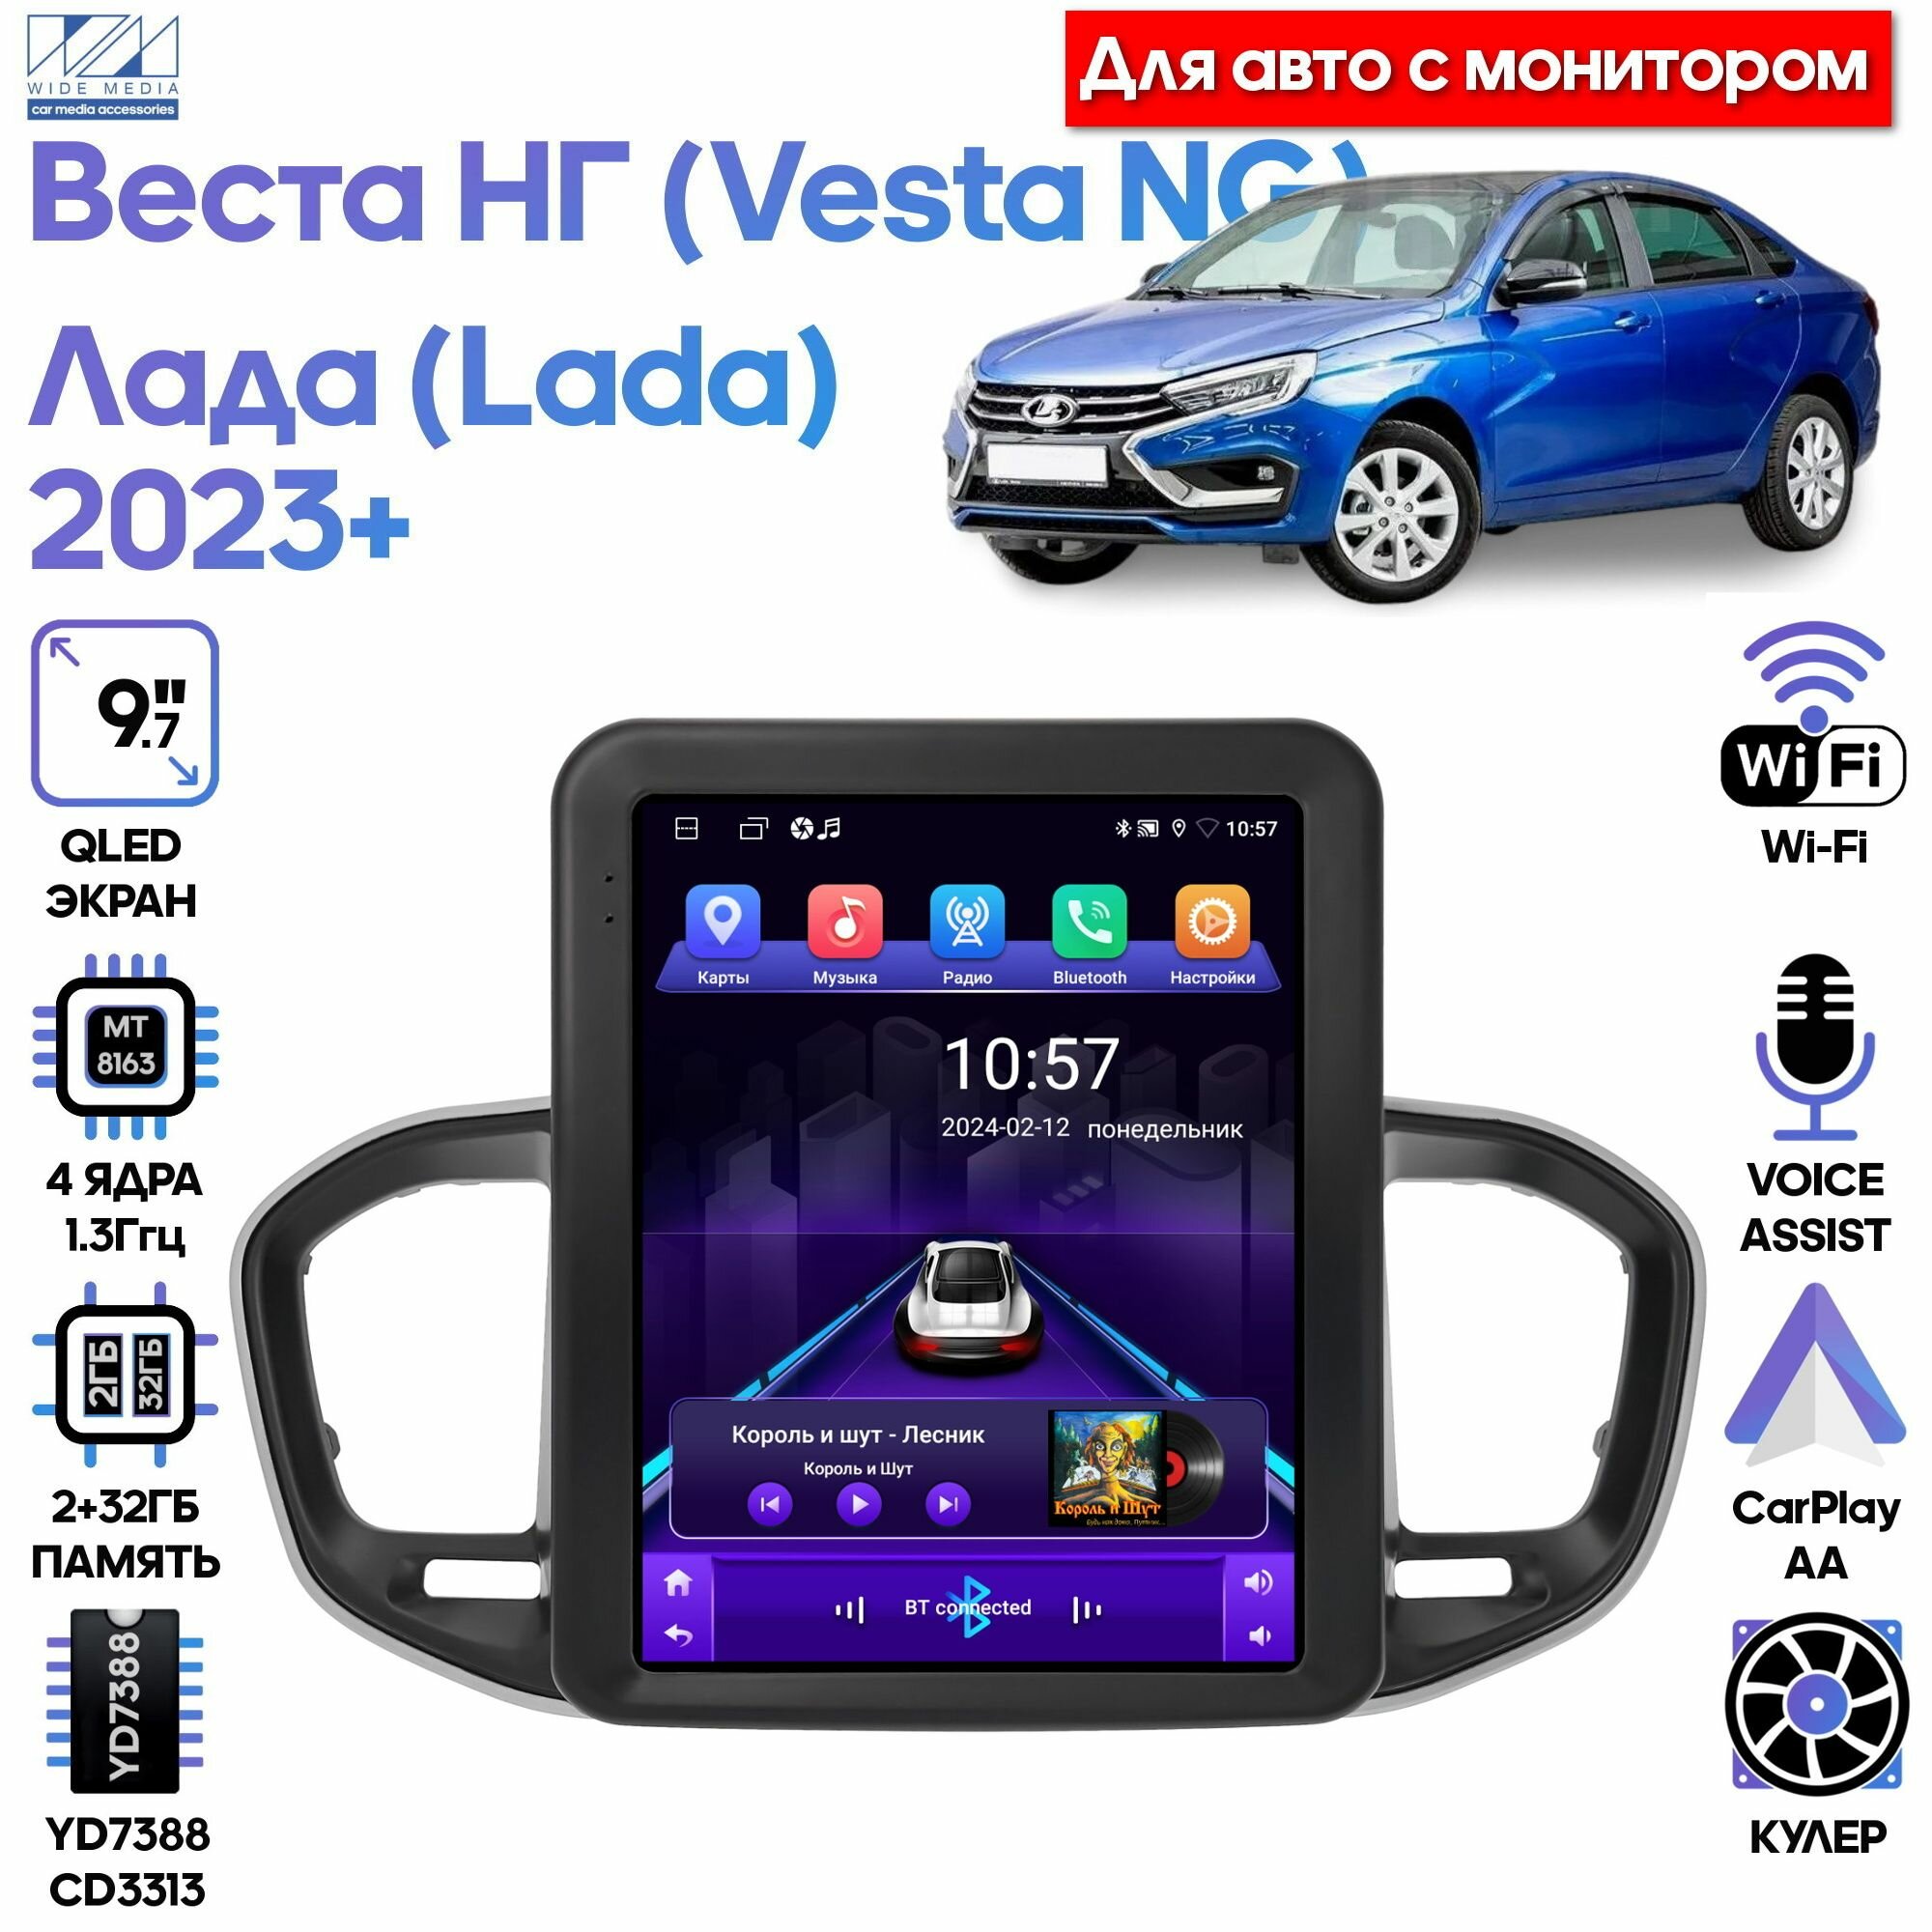 Штатная магнитола Wide Media для Лада Веста НГ (Lada Vesta NG) 2022+ (для авто с монитором) / Android 9, 9,7 дюймов, 2/32GB, 4 ядра, YD7388